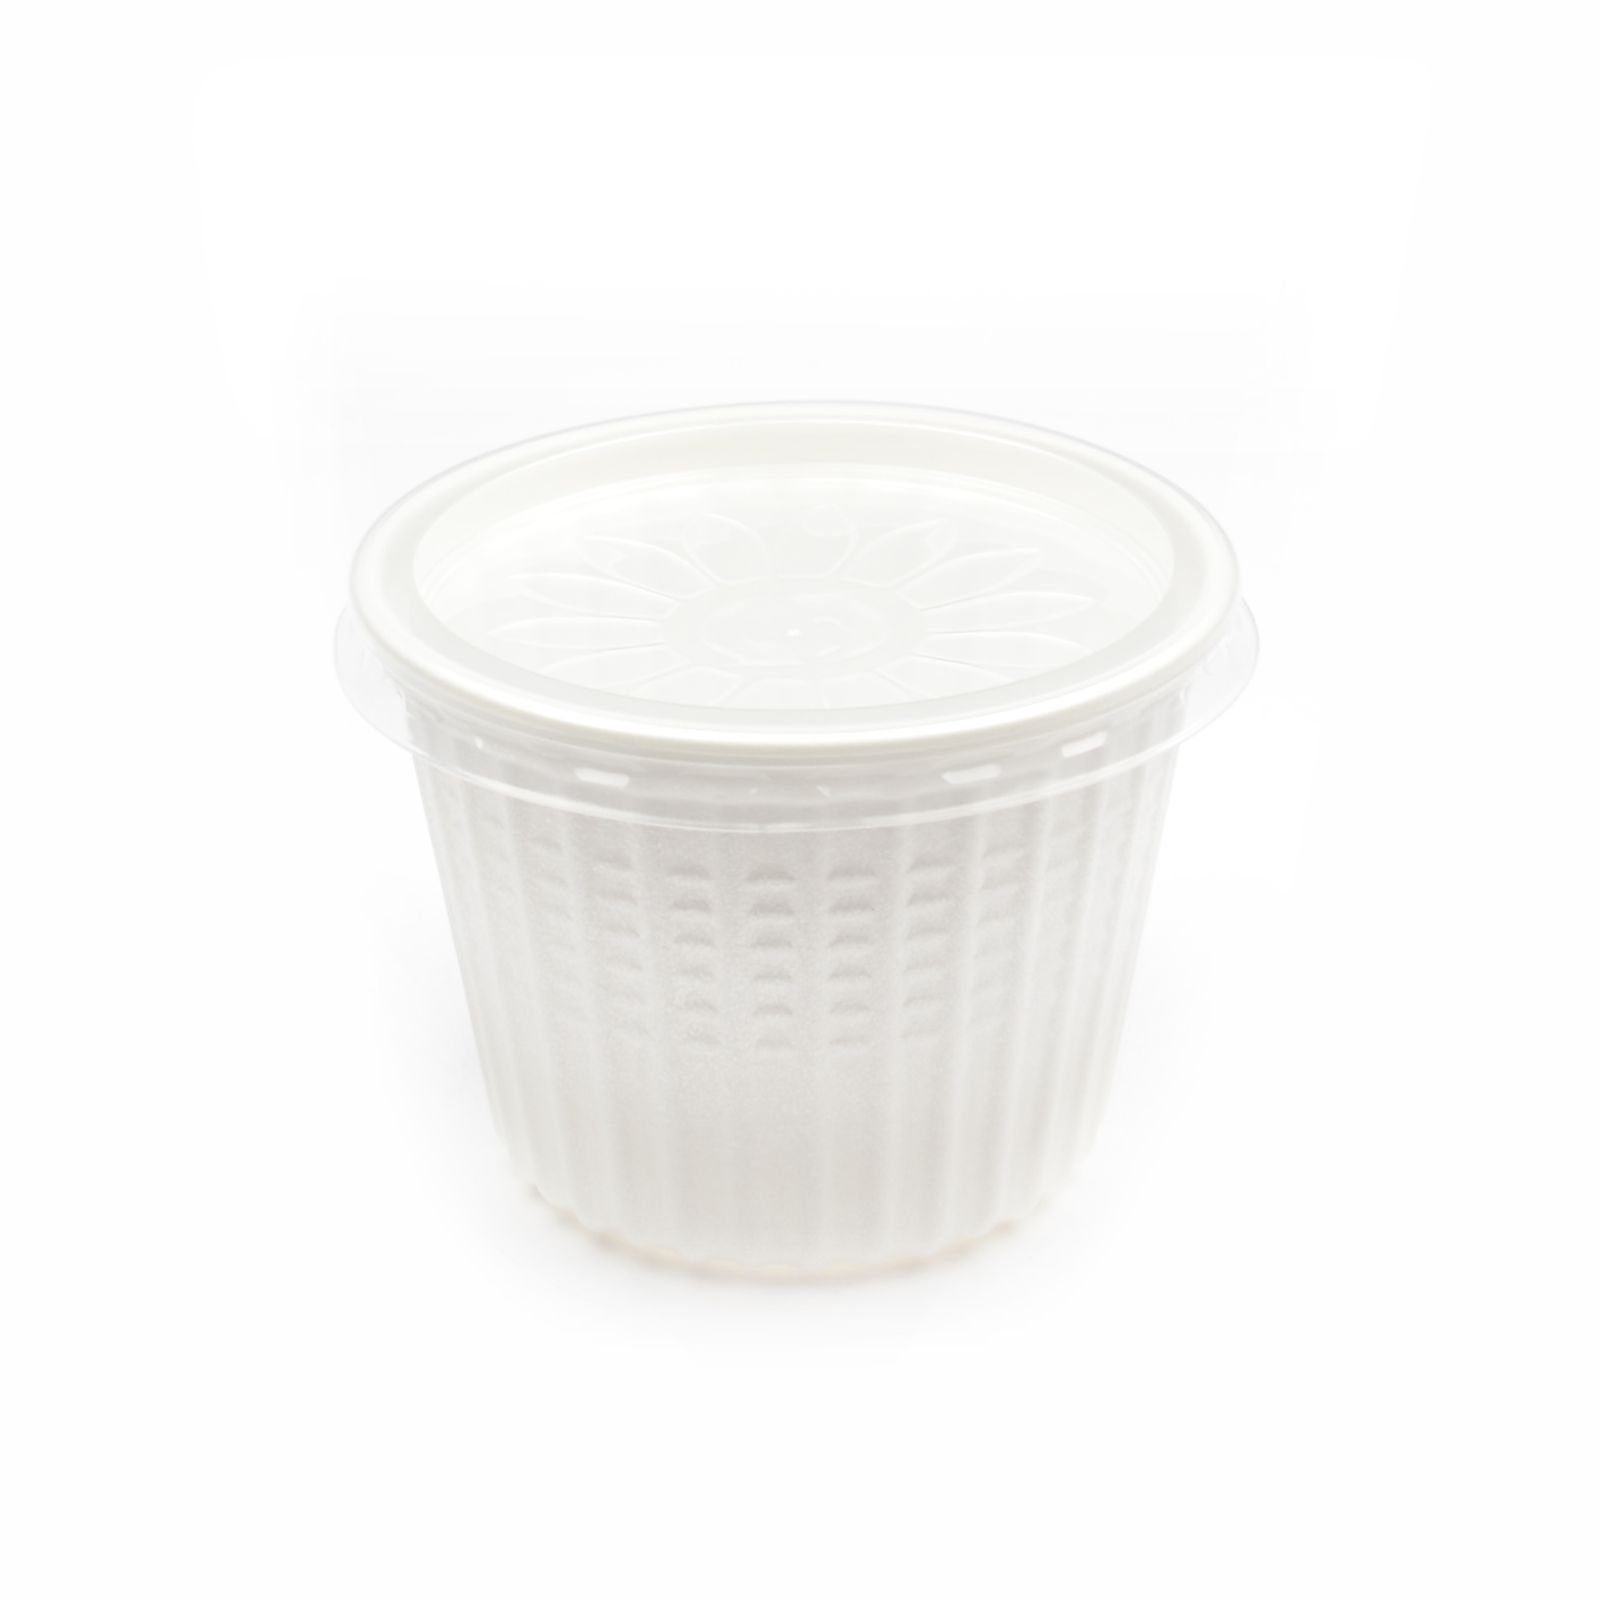 Einwegbecher 100 Stück Thermo Suppenbecher mit Deckel, 500 ml, weiß, rund, Suppenschalen Soup To Go-Container Take Away Suppenbehälter